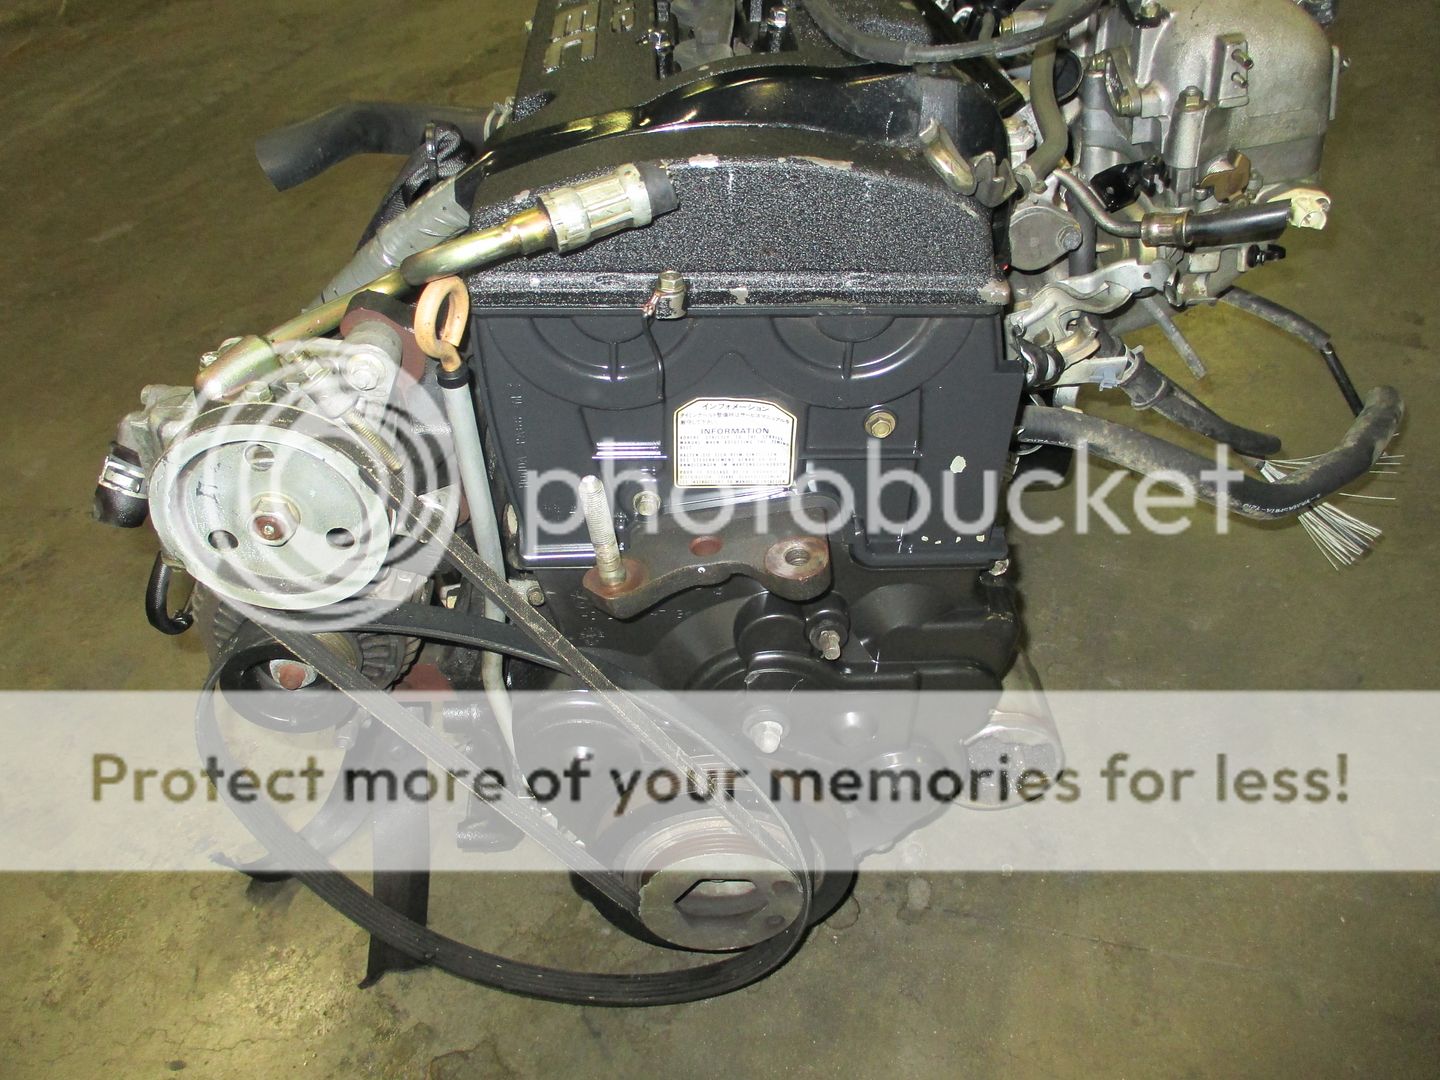 Honda Prelude JDM H22A OBD1 DOHC vtec Engine 92 96 Motor Manual Transmission H22